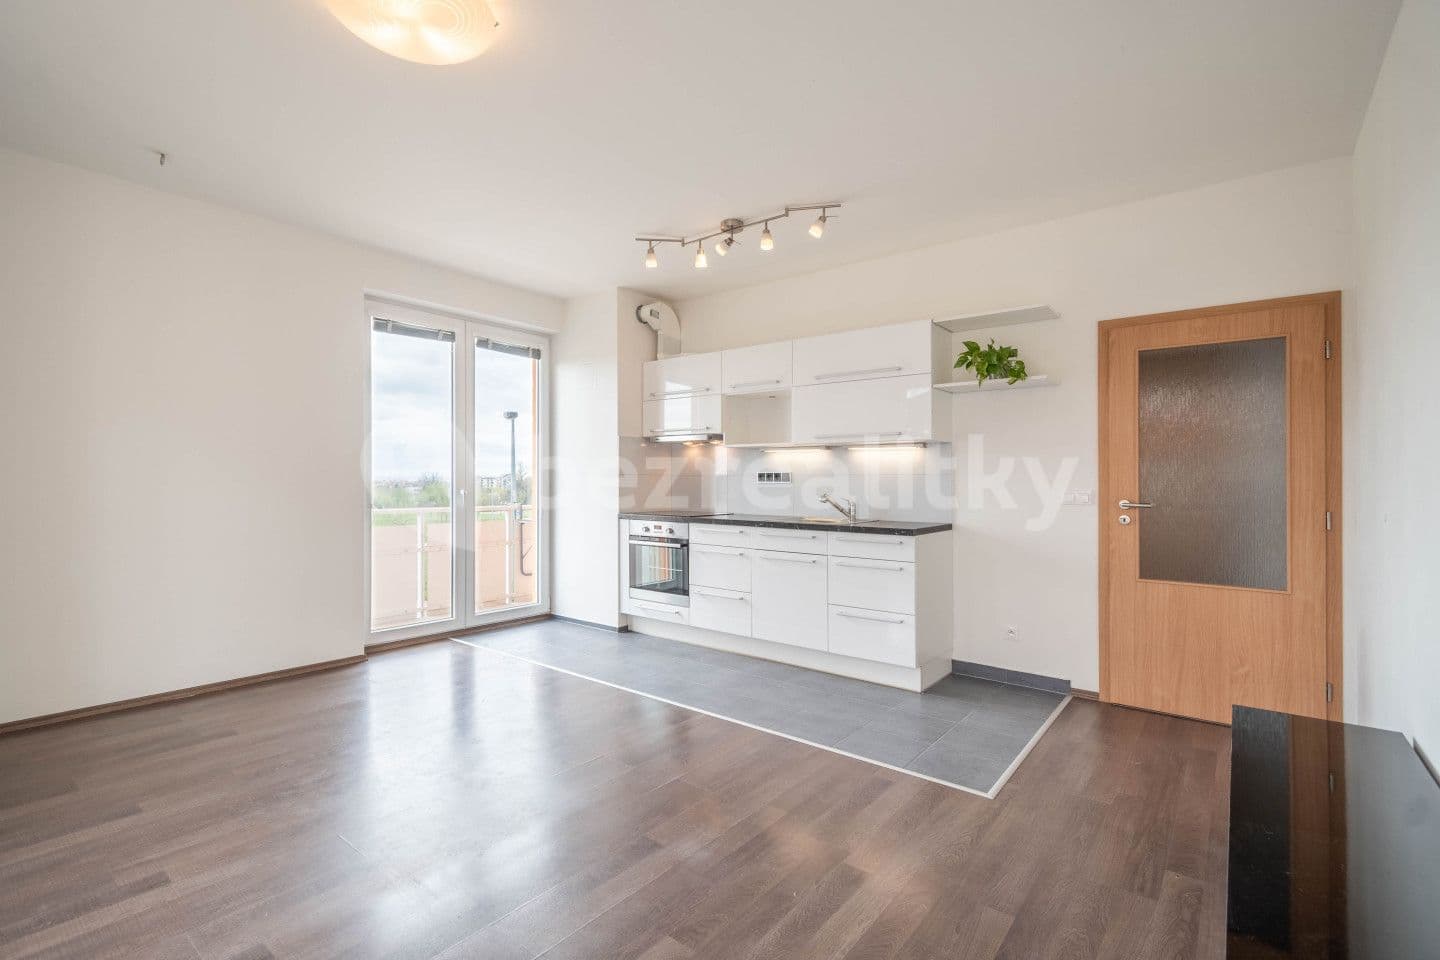 1 bedroom with open-plan kitchen flat for sale, 41 m², Sicherova, Prague, Prague